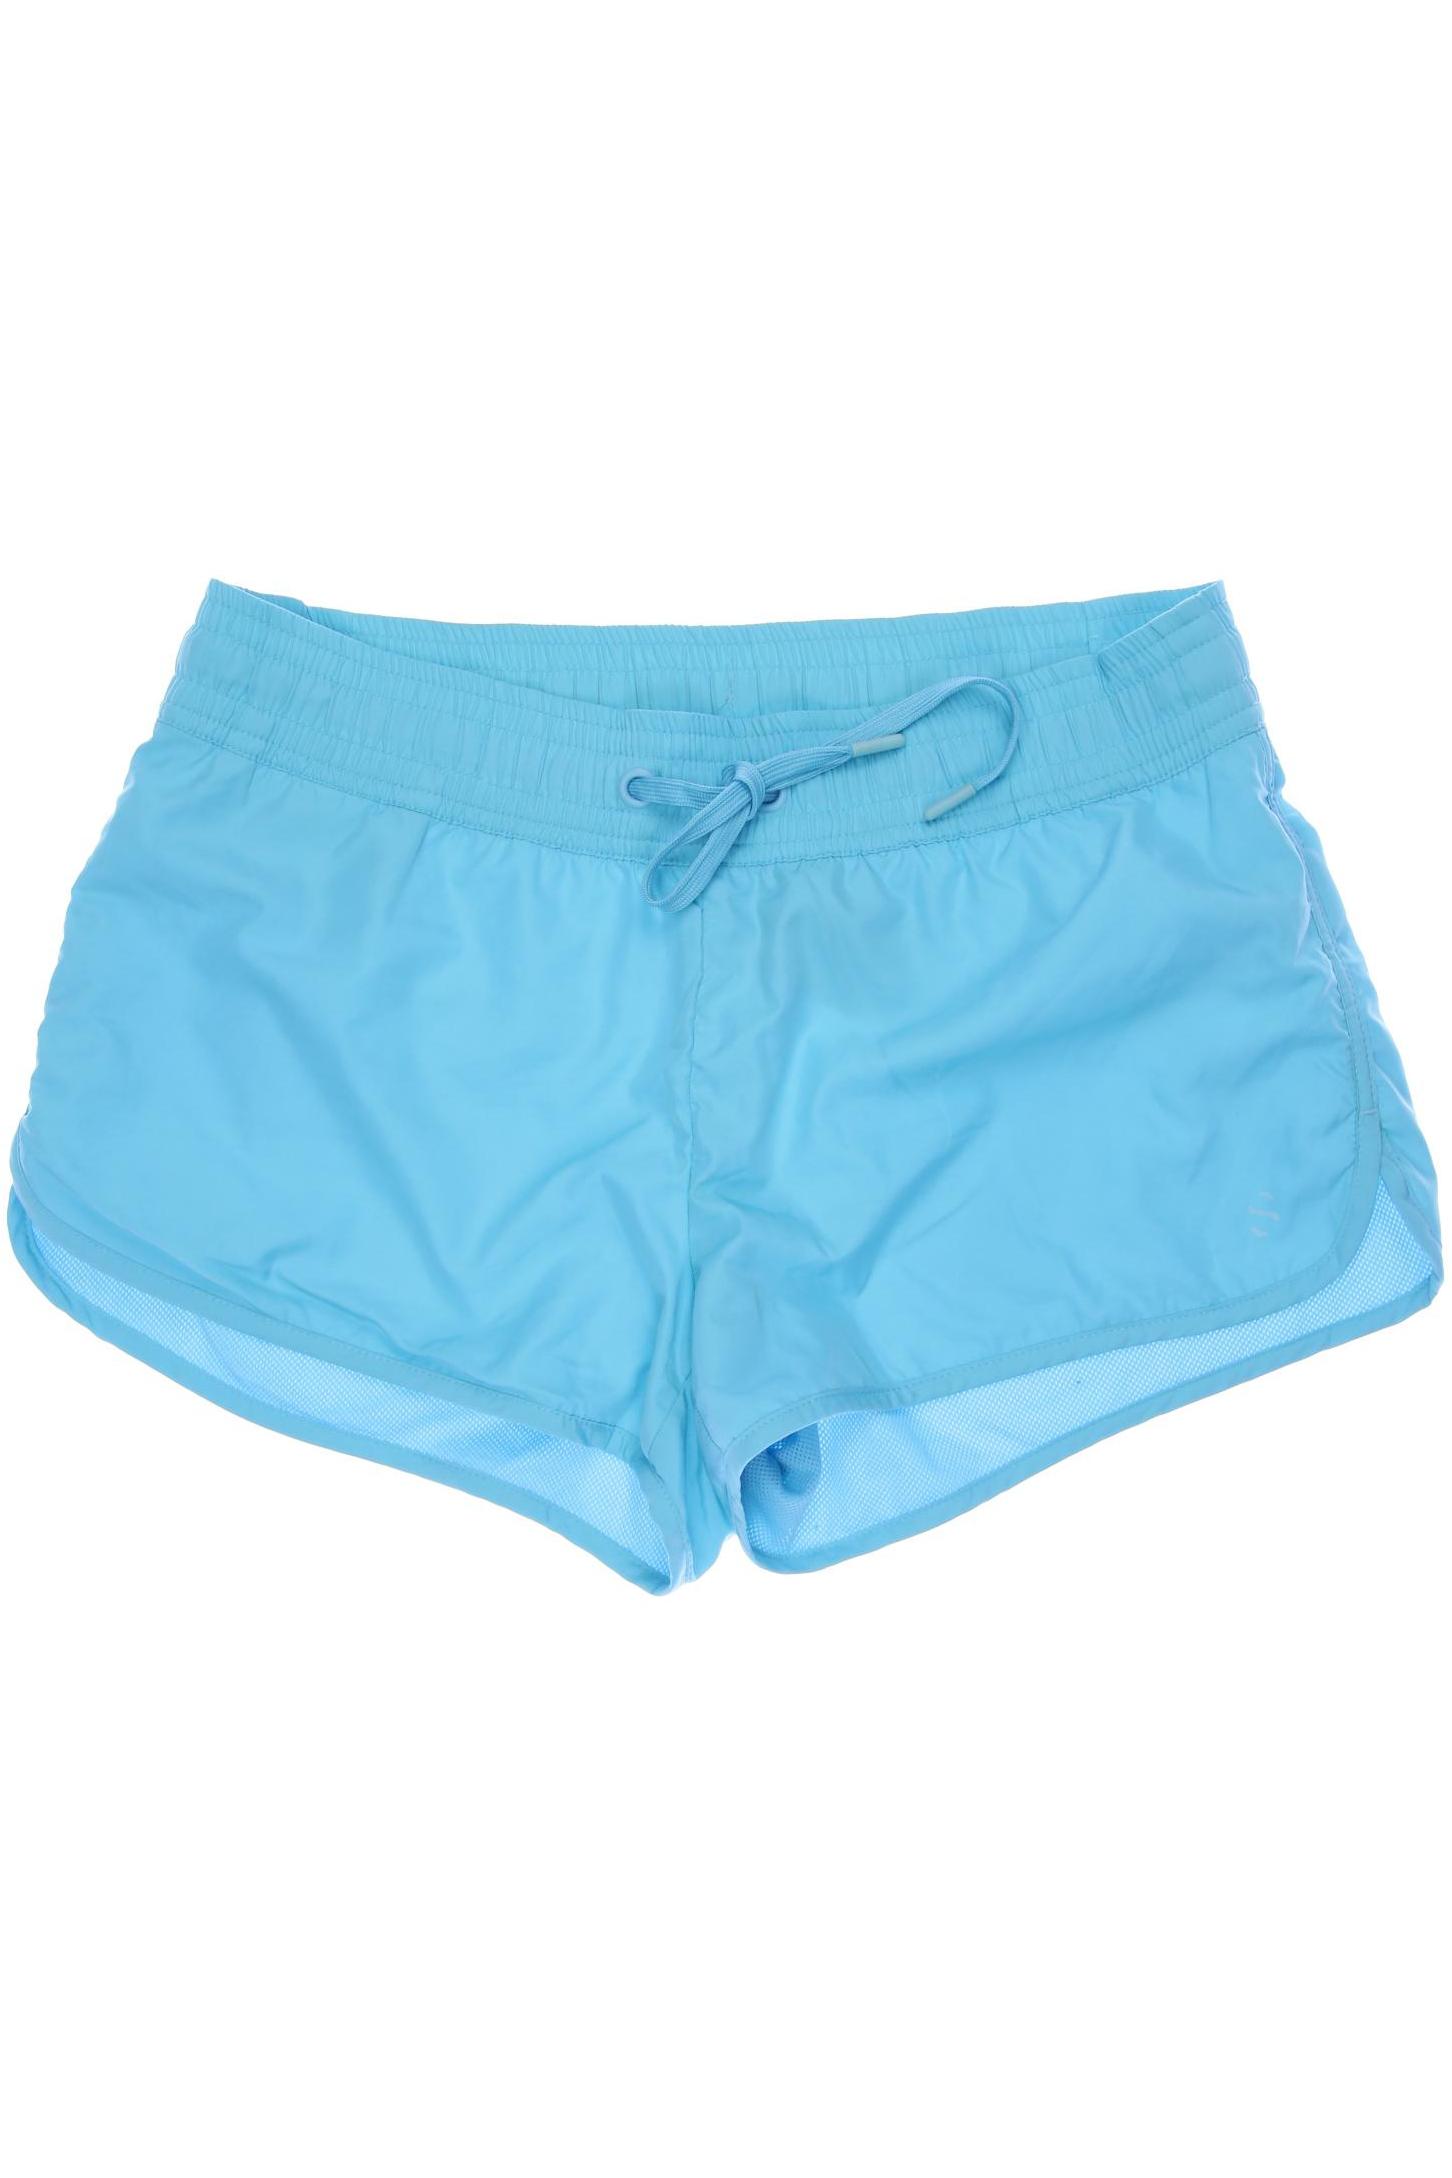 H&M Damen Shorts, blau, Gr. 40 von H&M